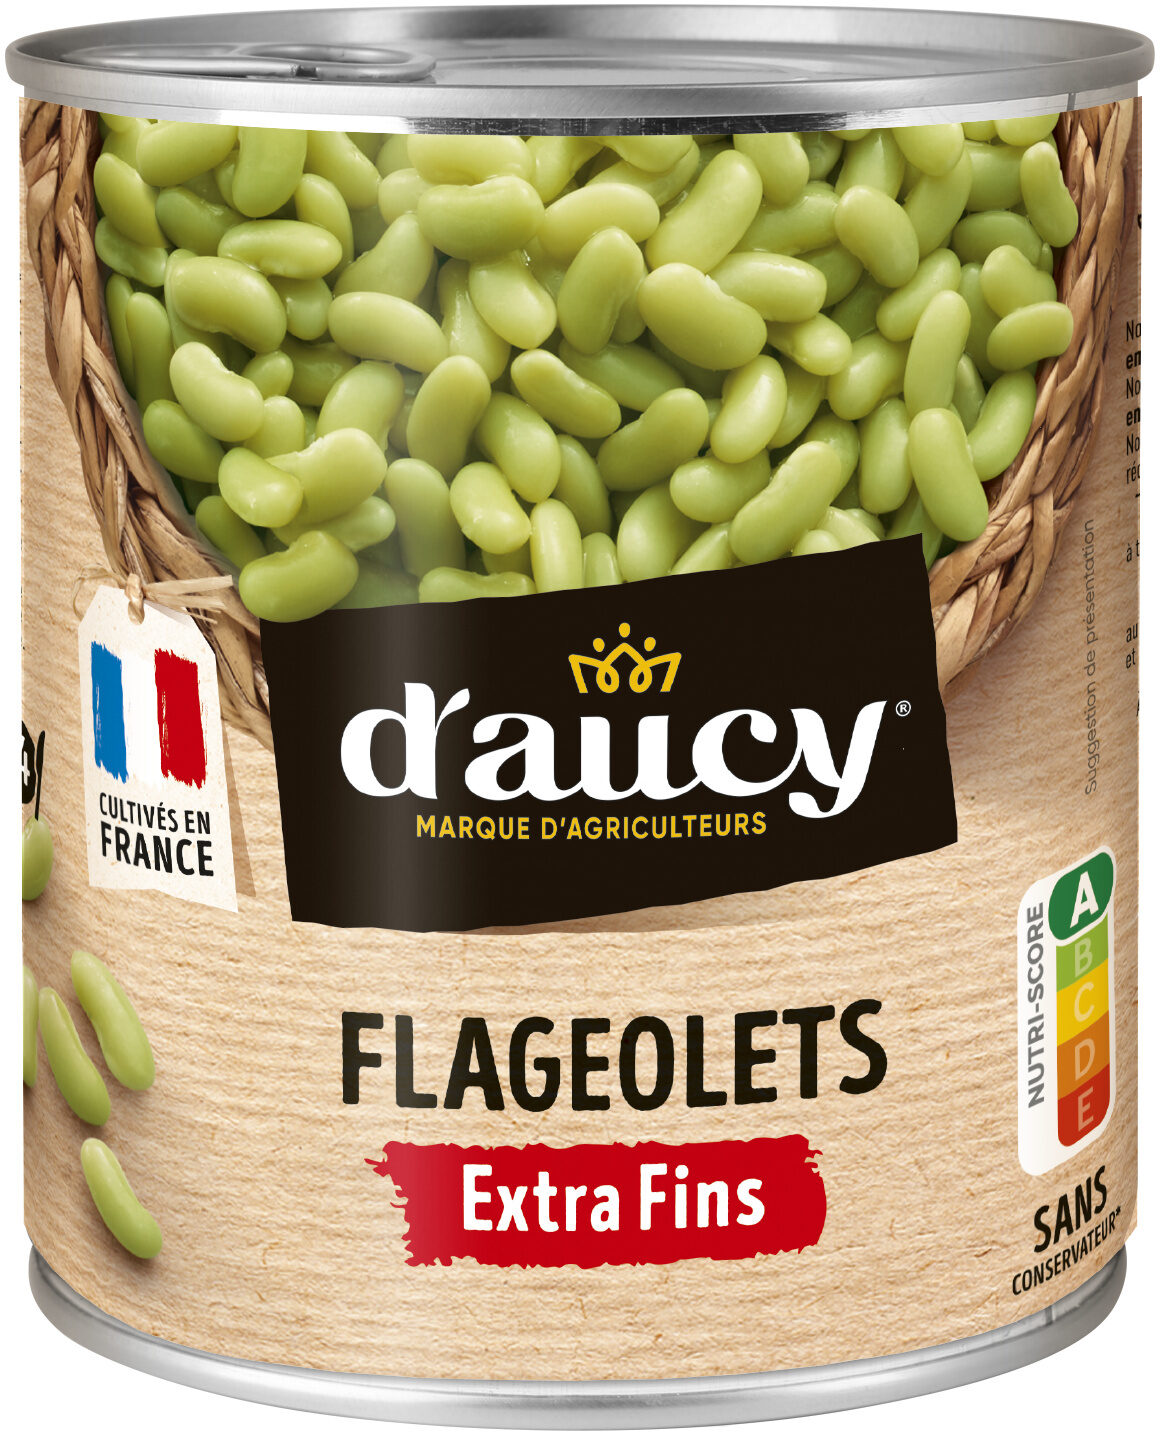 Flageolets extra fins - Produkt - fr